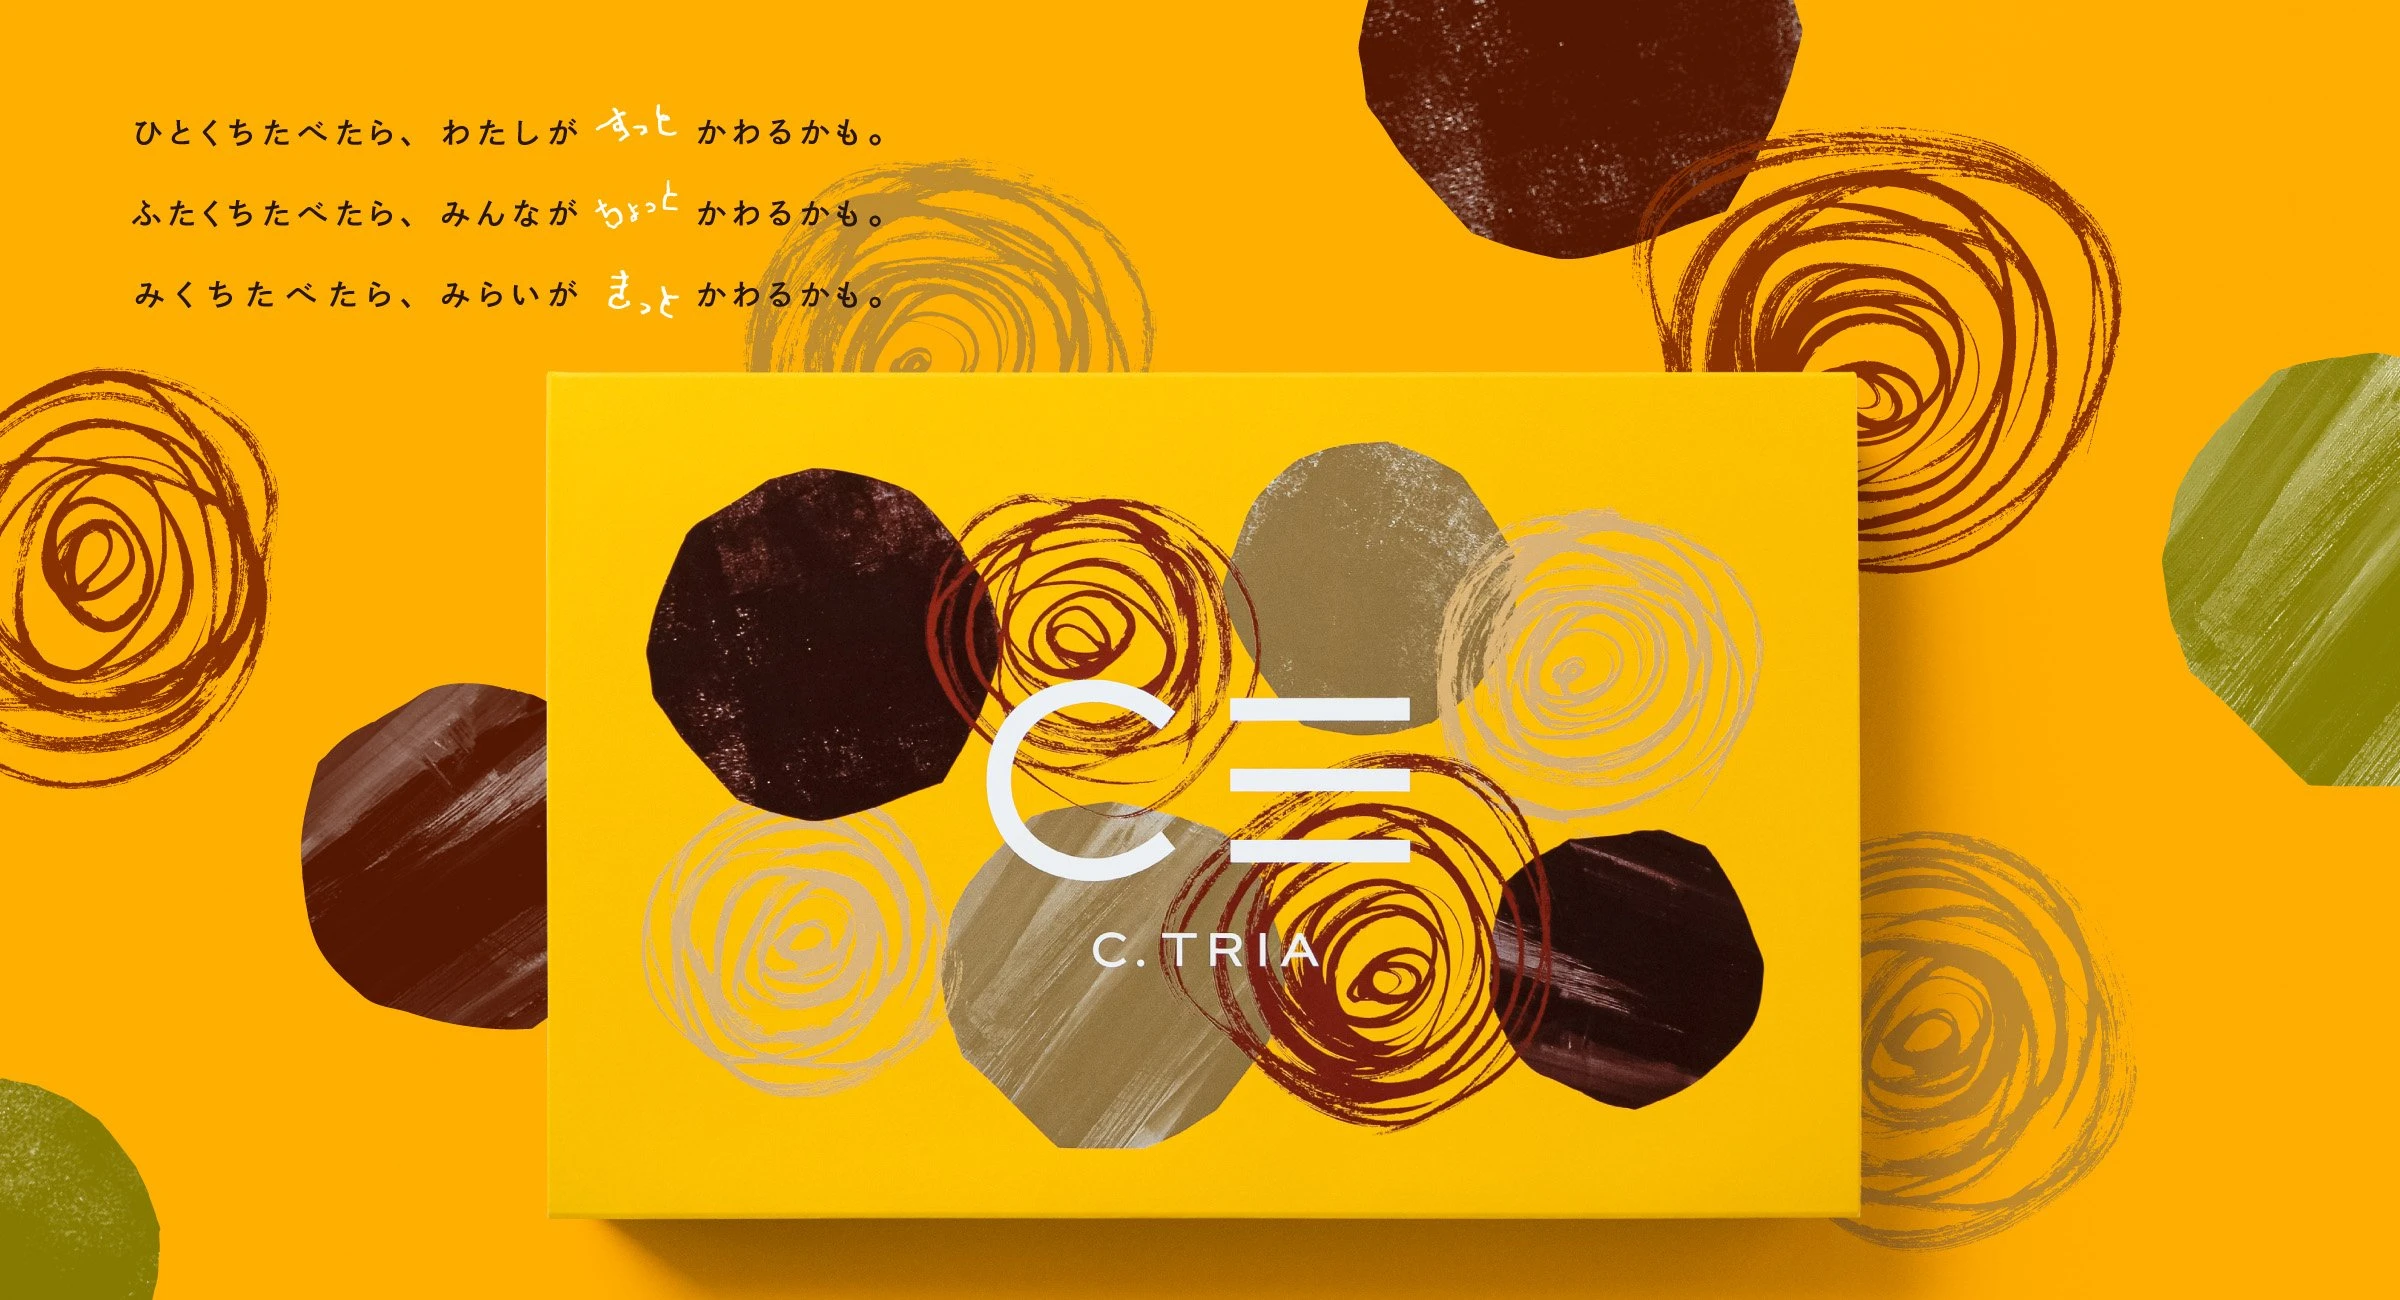 6月4日「虫の日」に合わせて徳島大学発「グリラス」が国産食用コオロギを用いた初の自社ブランド菓子を発売